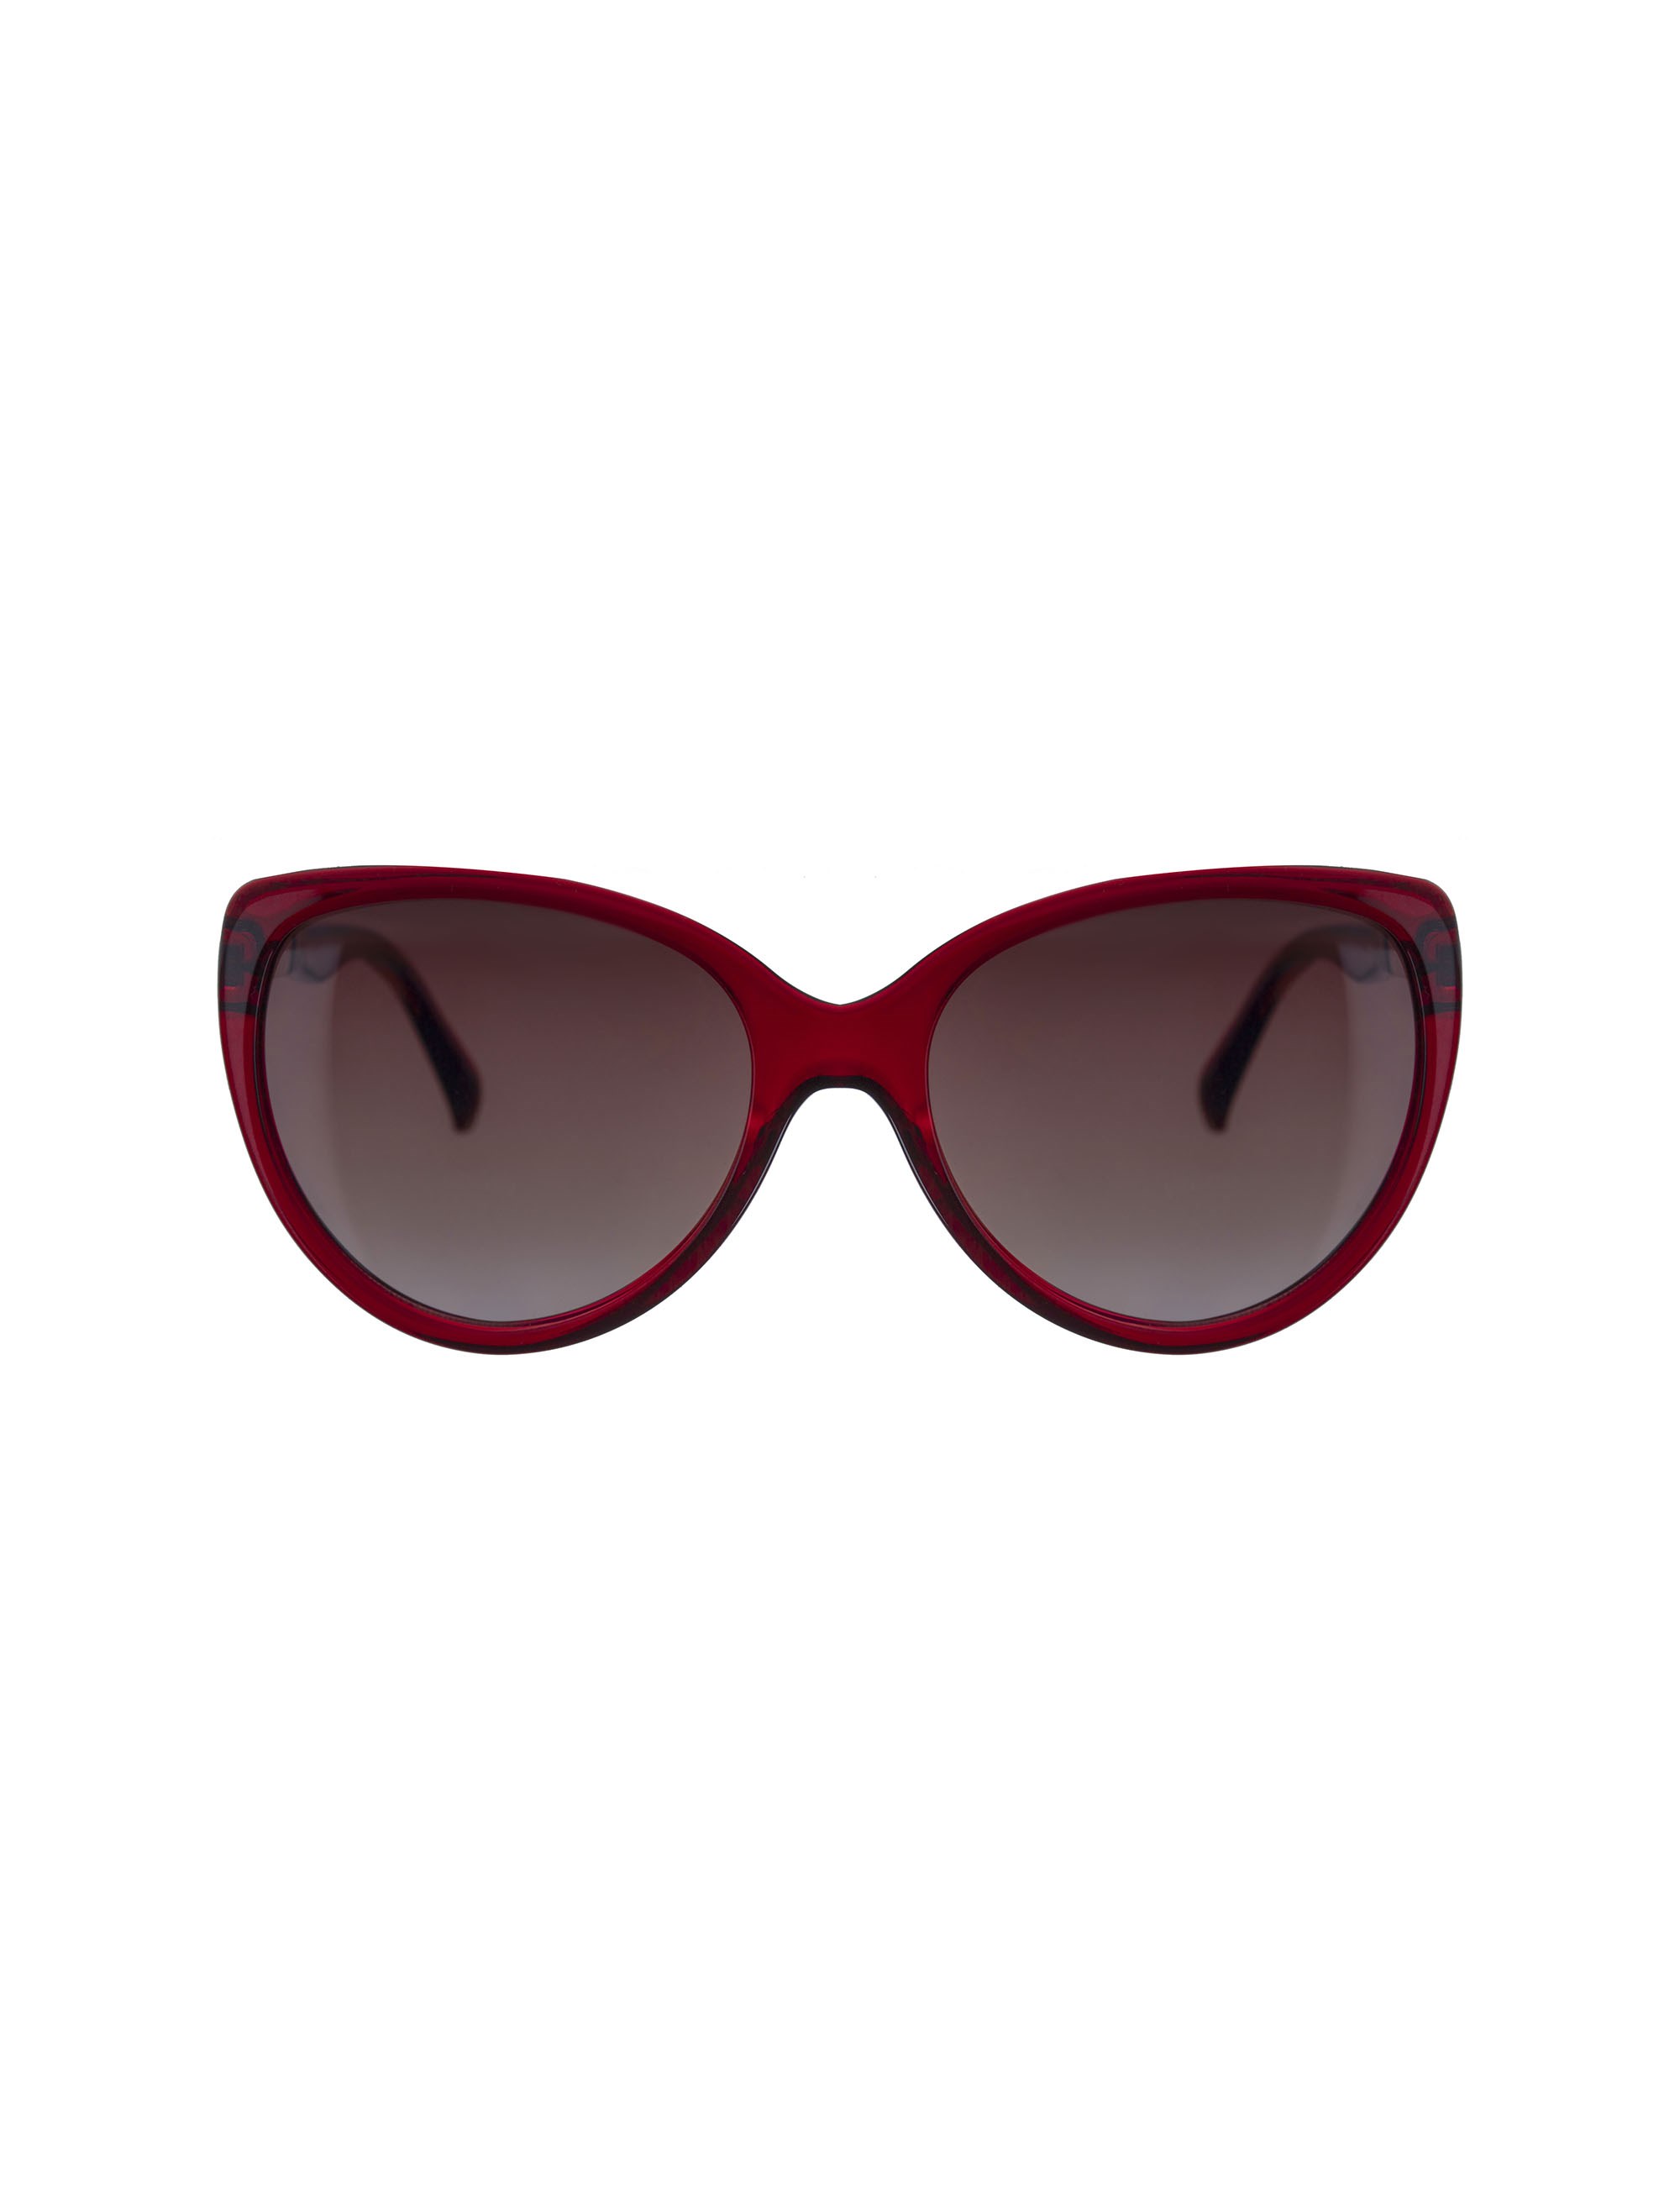 عینک آفتابی زنانه - تد بیکر - قرمز    - 2